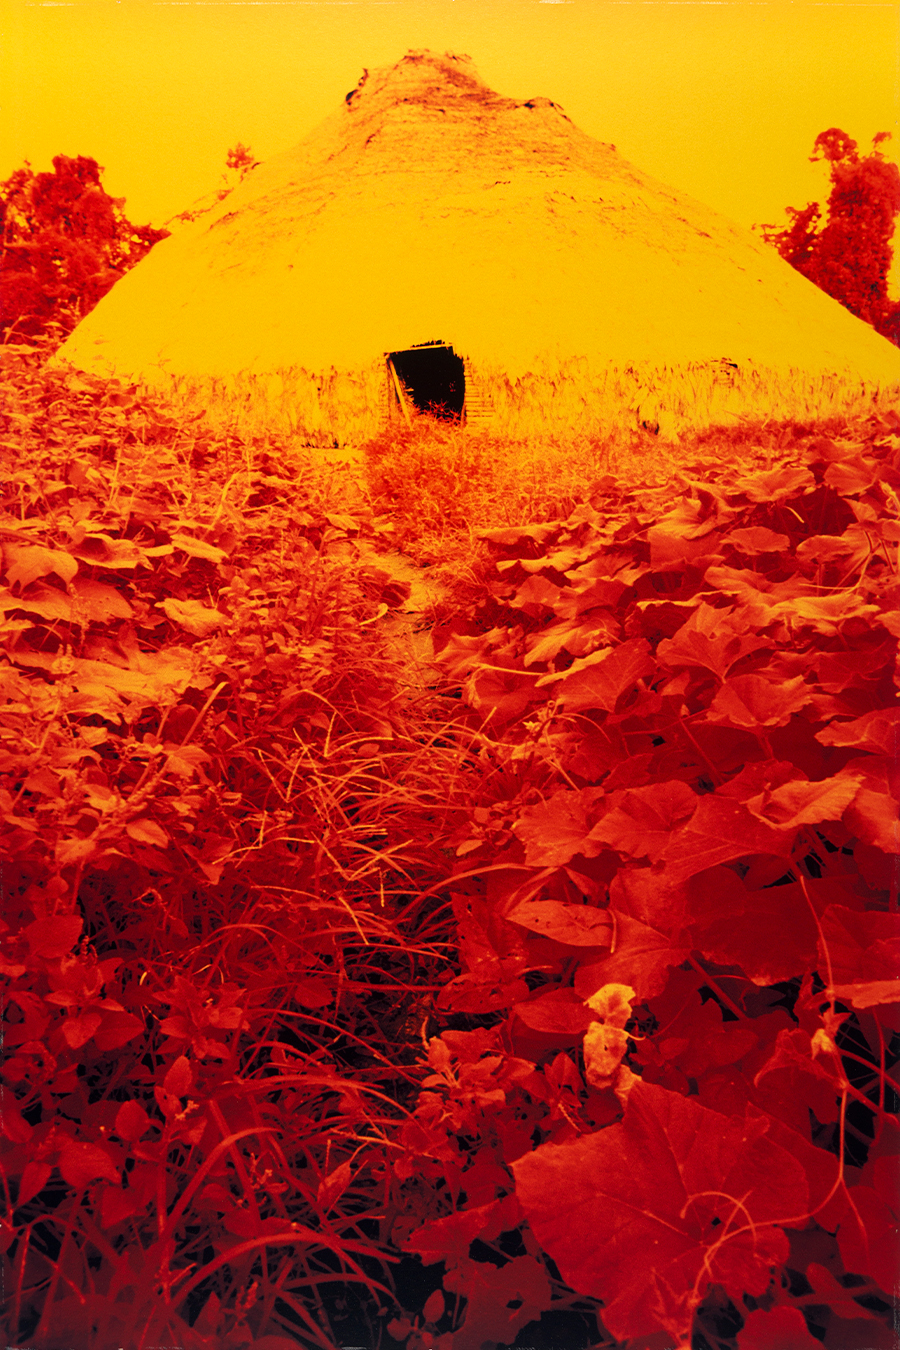 Claudia Andujar | Maloca rodeada de folhas de batata doce da série A casa, 1974